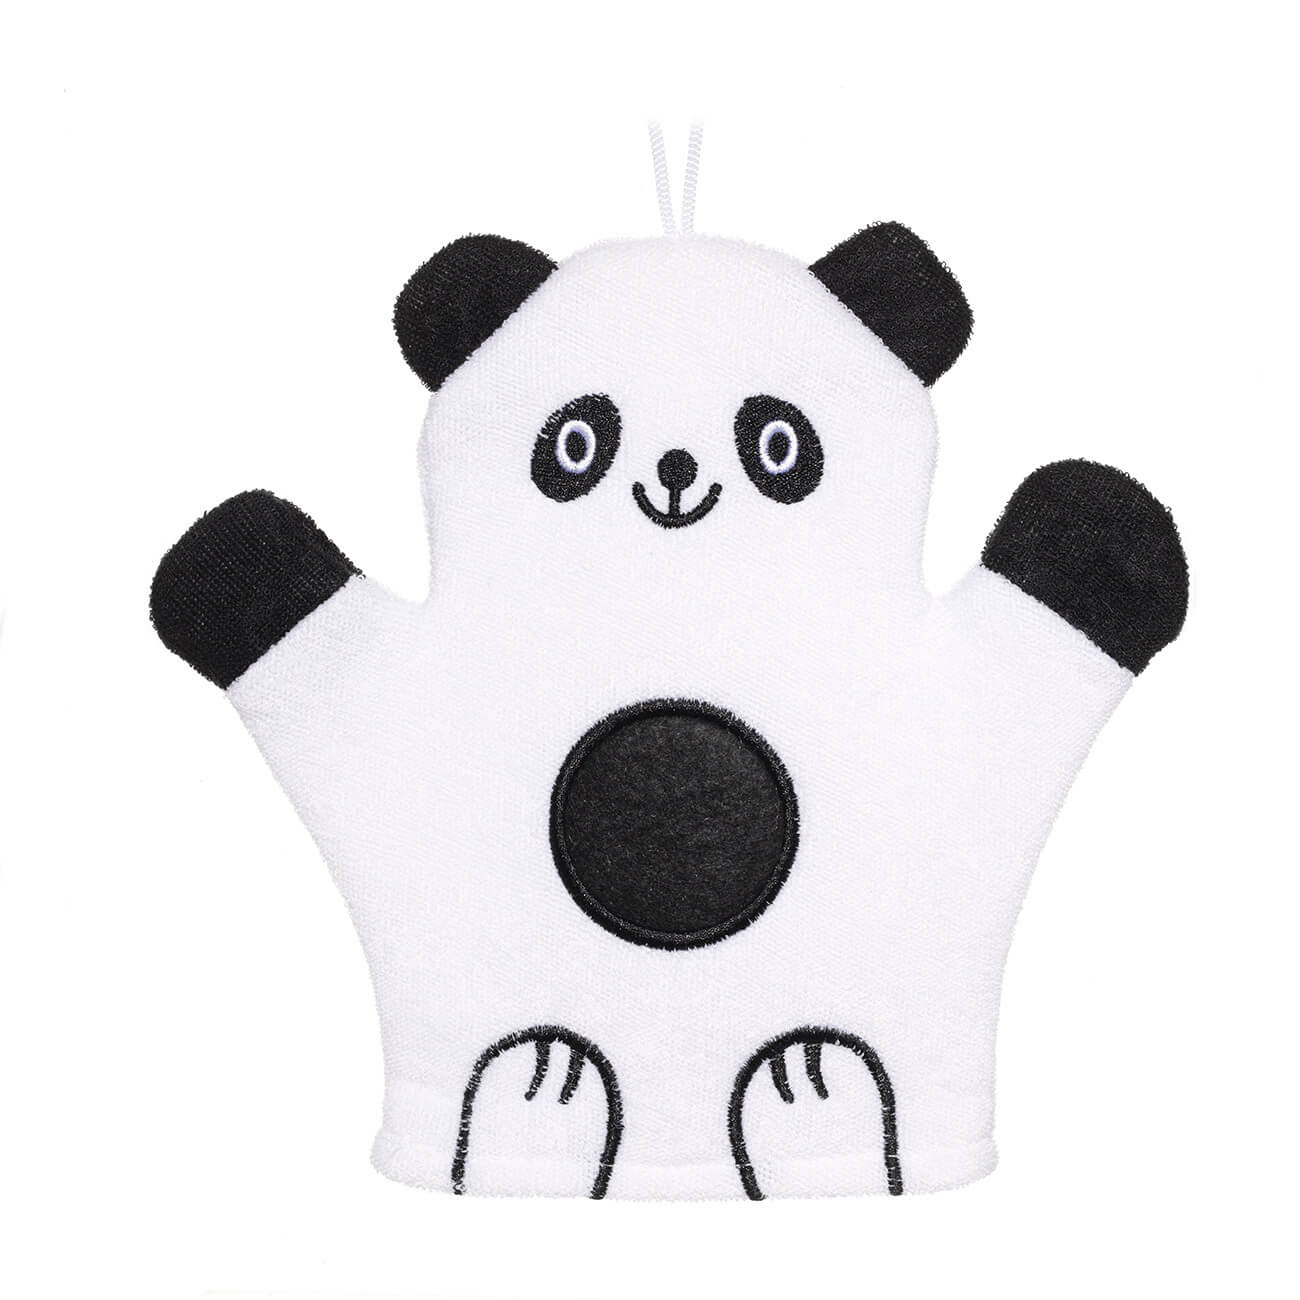 Мочалка-варежка для мытья тела, 20х20 см, детская, полиэстер, черно-белая, Панда, Panda велокорзина m wave панда детская на руль жёлтая 00 170538